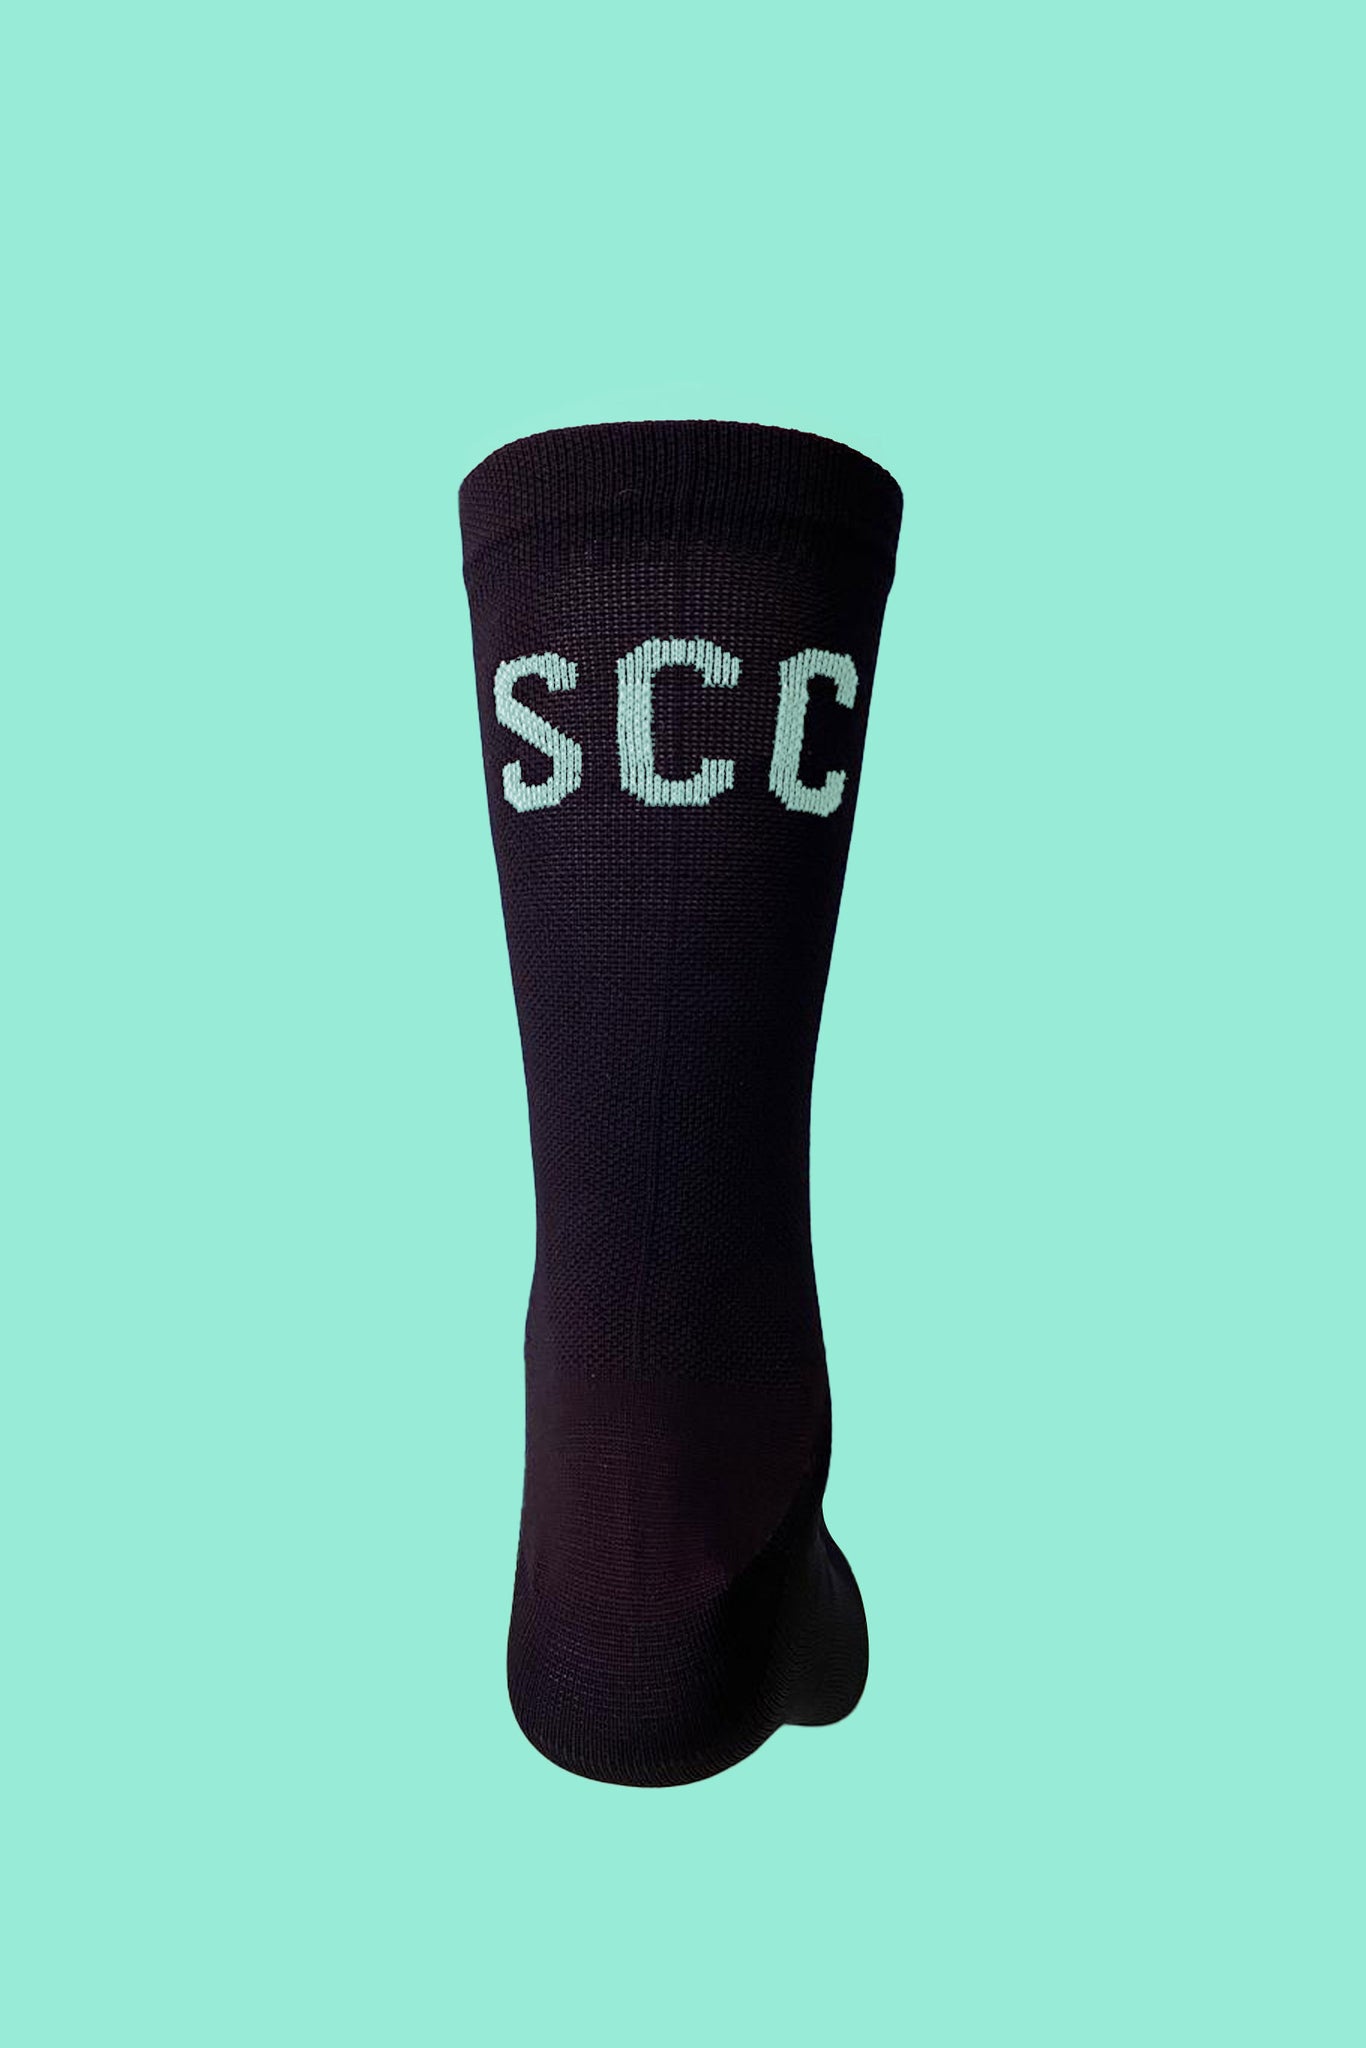 SCC socks